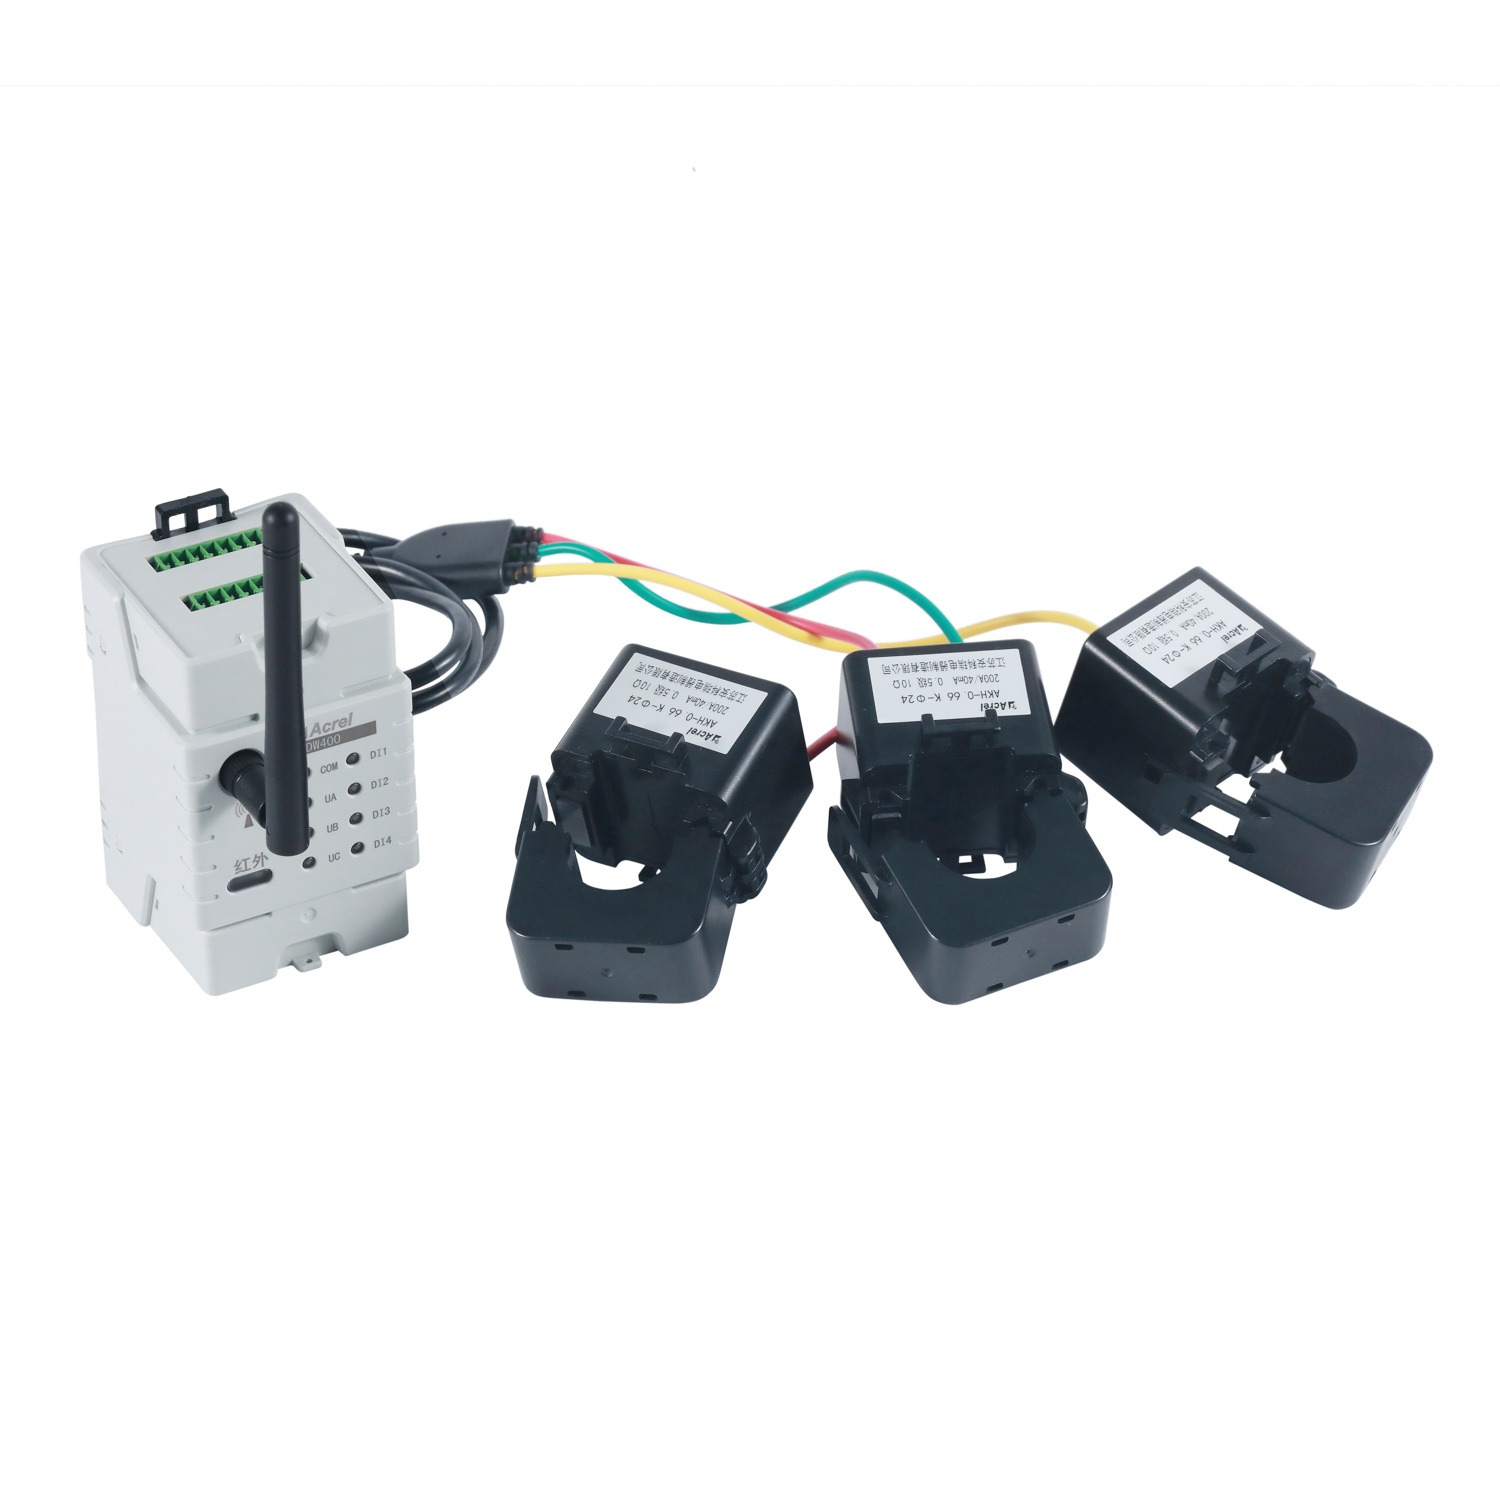 安科瑞治污设备监控装置ADW400-D36-1S  免断电安装可磁钢取电